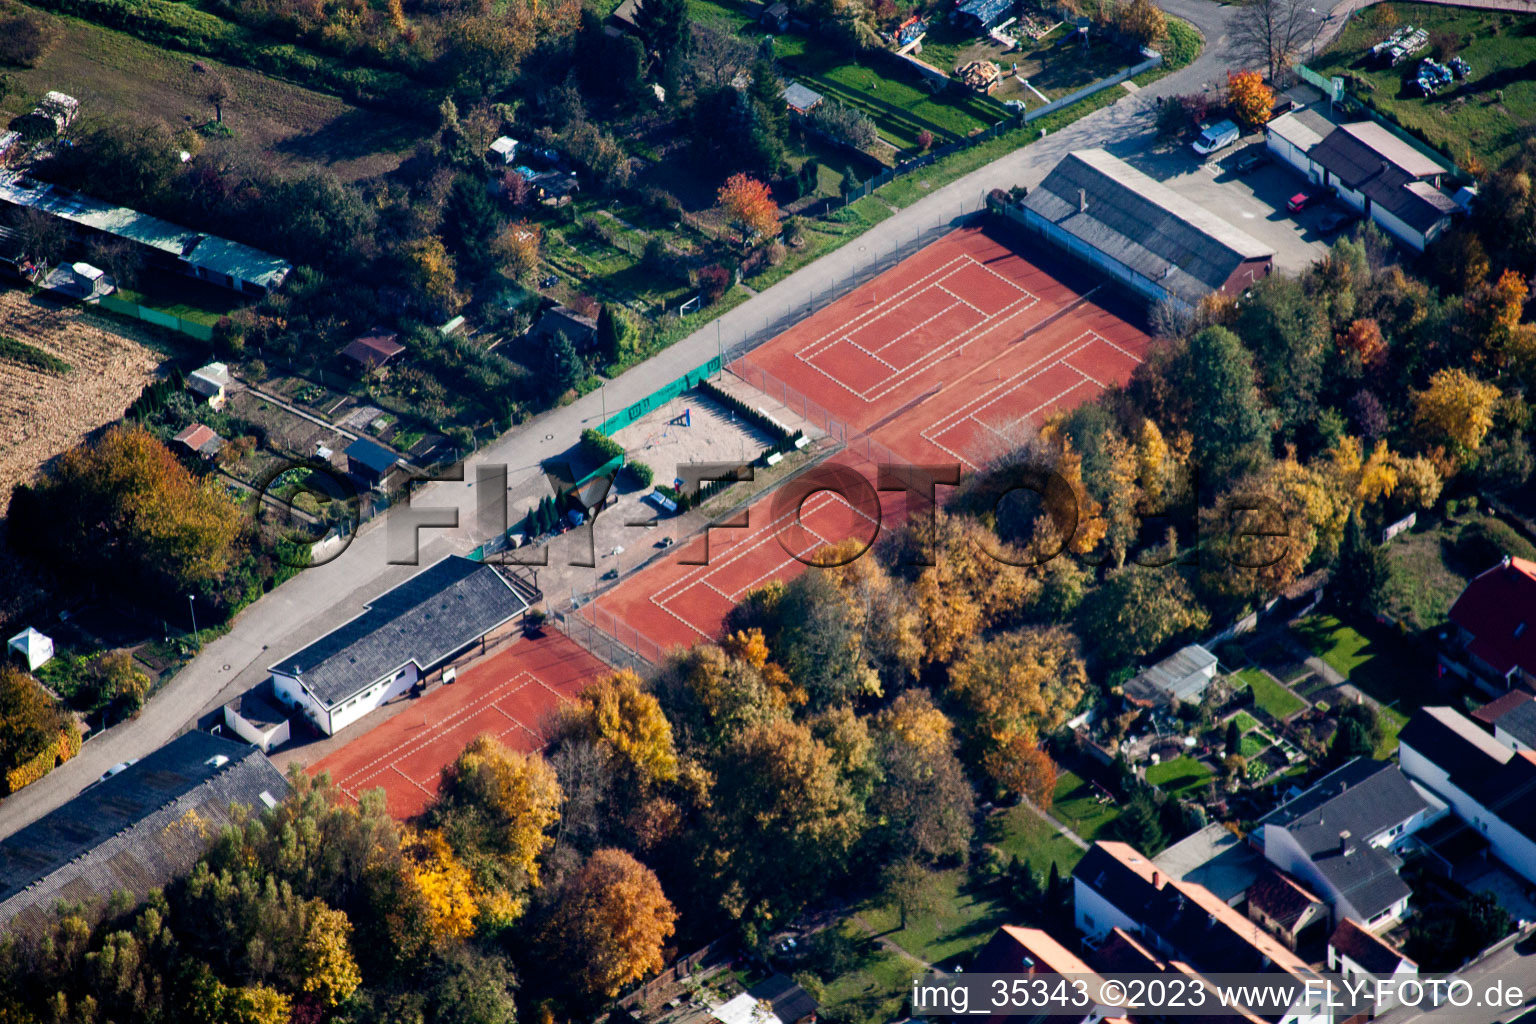 Luftbild von Hagenbach, Tennis im Bundesland Rheinland-Pfalz, Deutschland